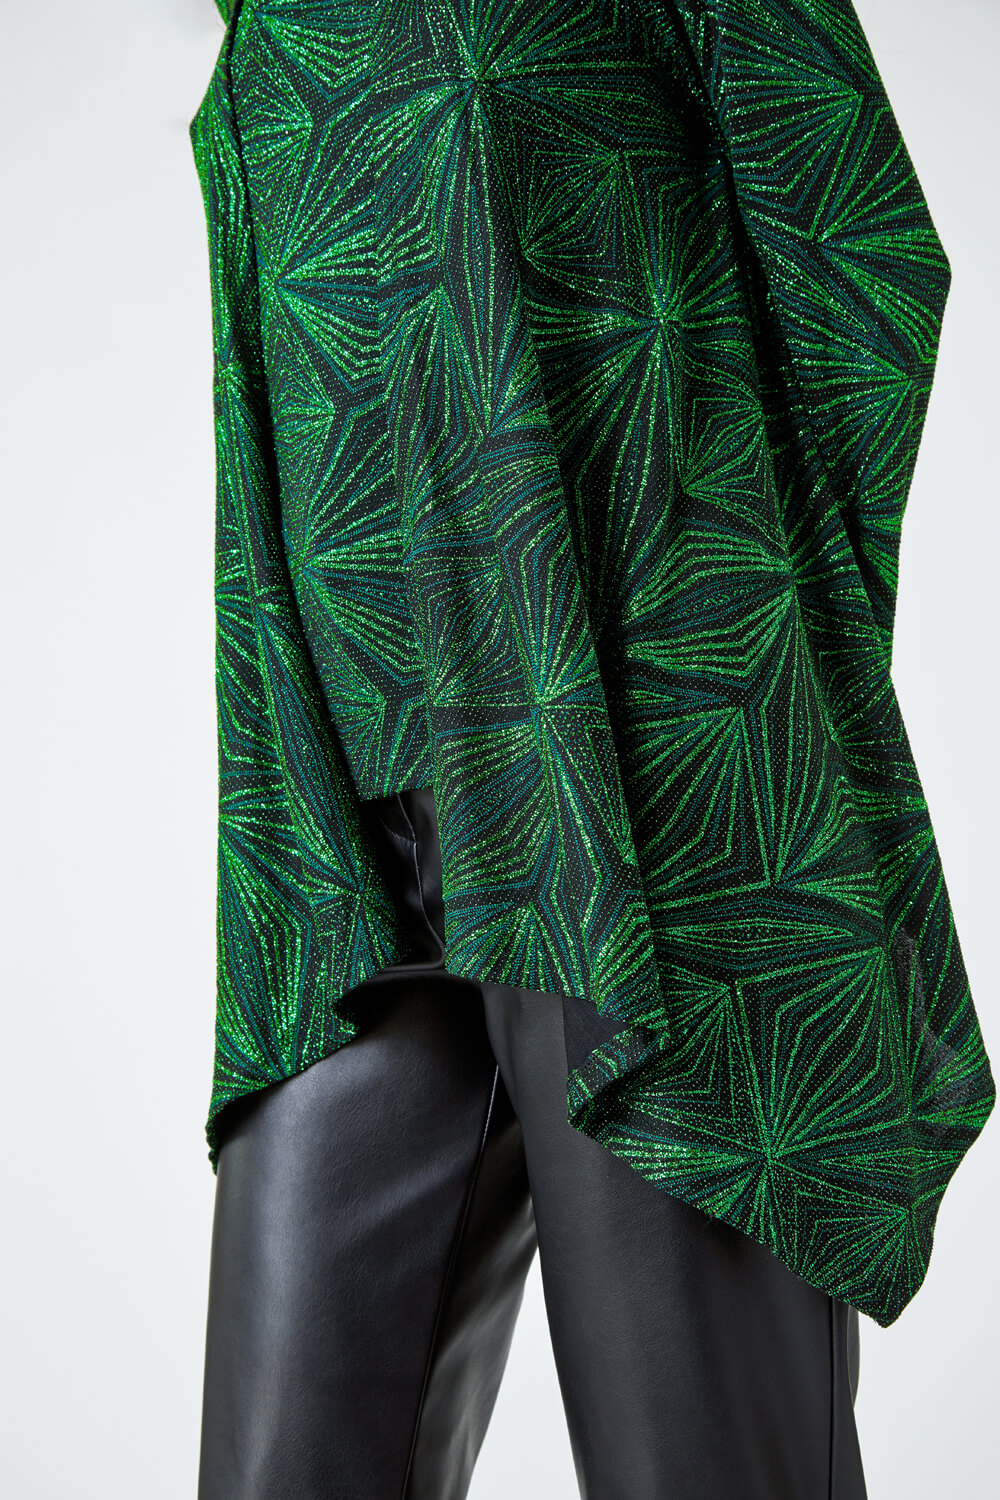 Green Geometric Sparkle Embellished Kimono, Image 5 of 5